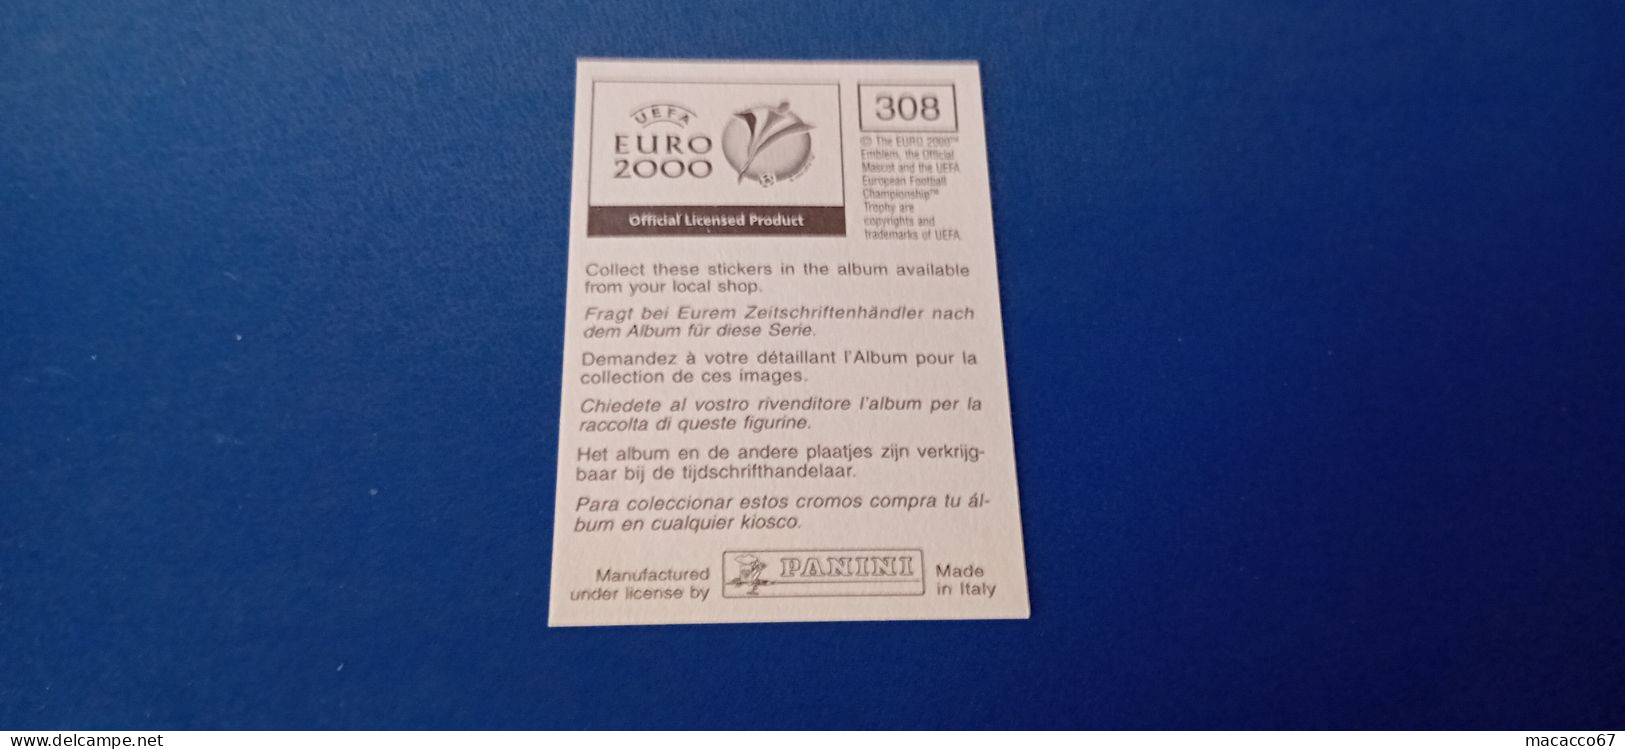 Figurina Panini Euro 2000 - 308 Nemec Repubblica Ceca - Italian Edition